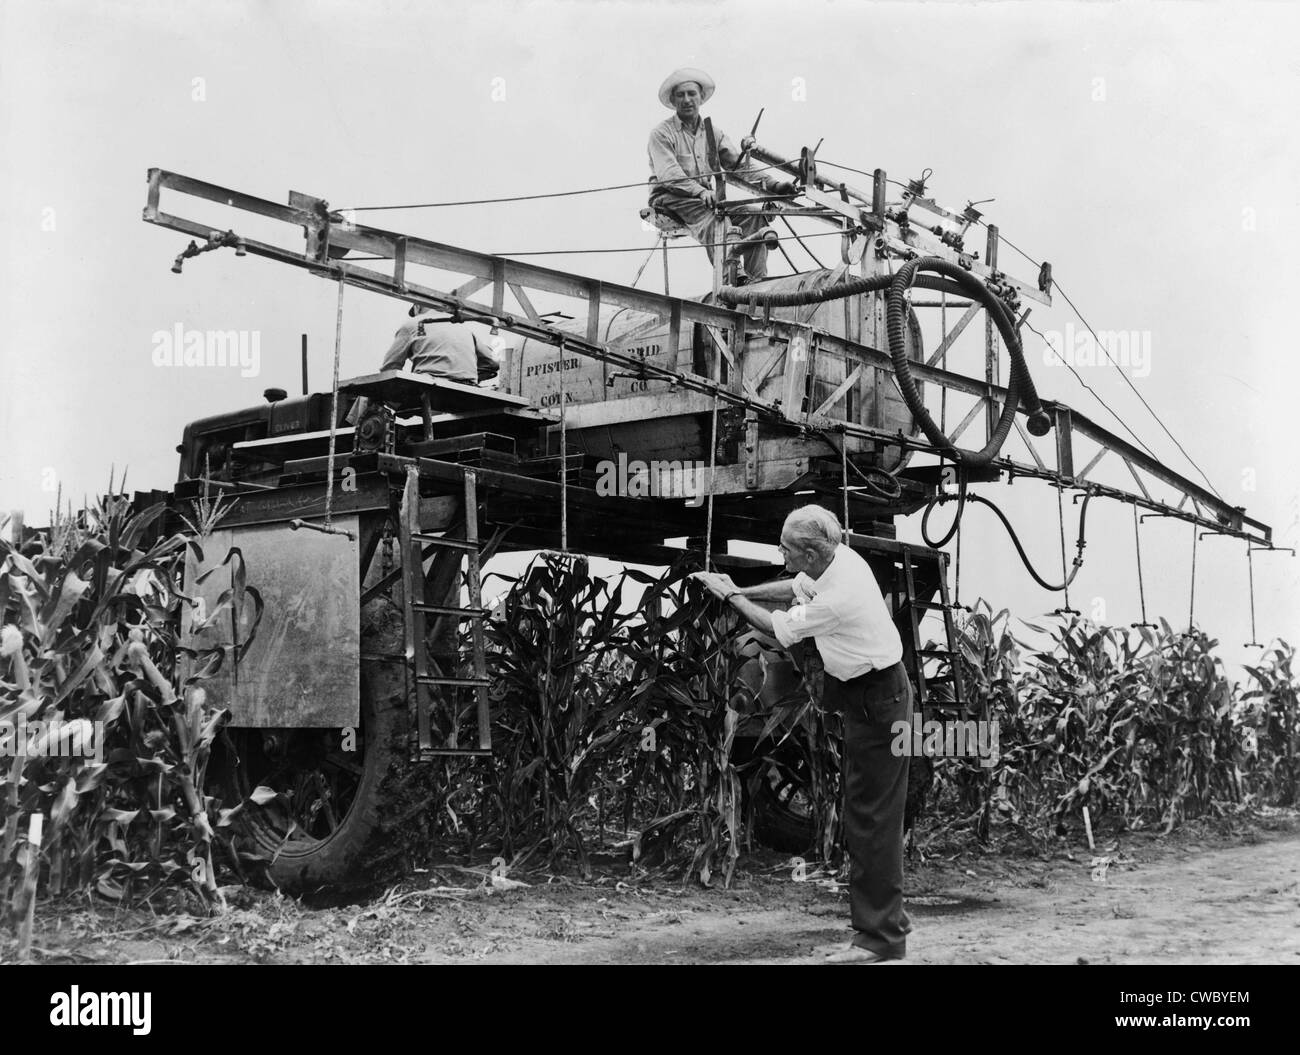 Su larga scala di spruzzatura Syndeet, un insetticida contenente DDT, su una fattoria in Illinois nel 1948. La nociva per l'ambiente Foto Stock